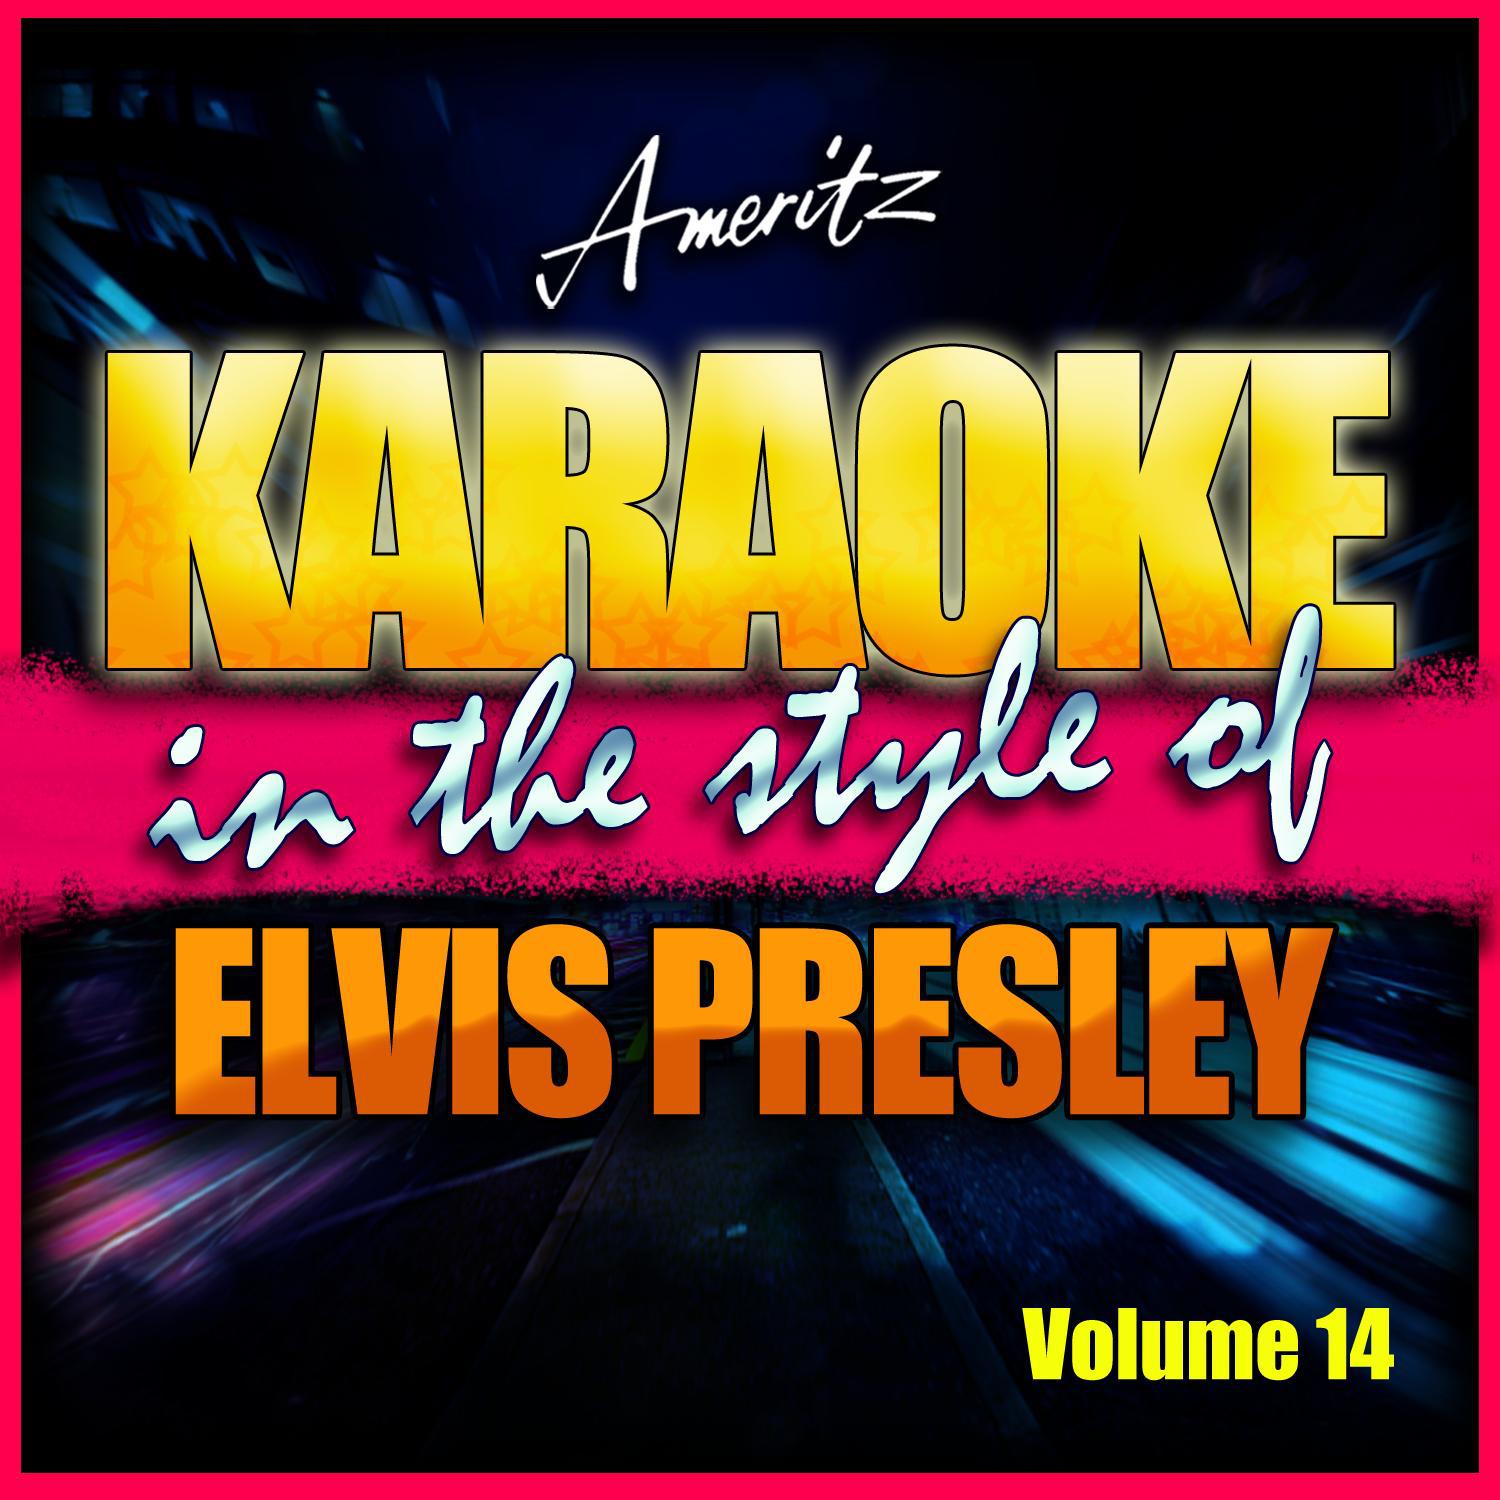 Karaoke - Elvis Presley Vol. 14